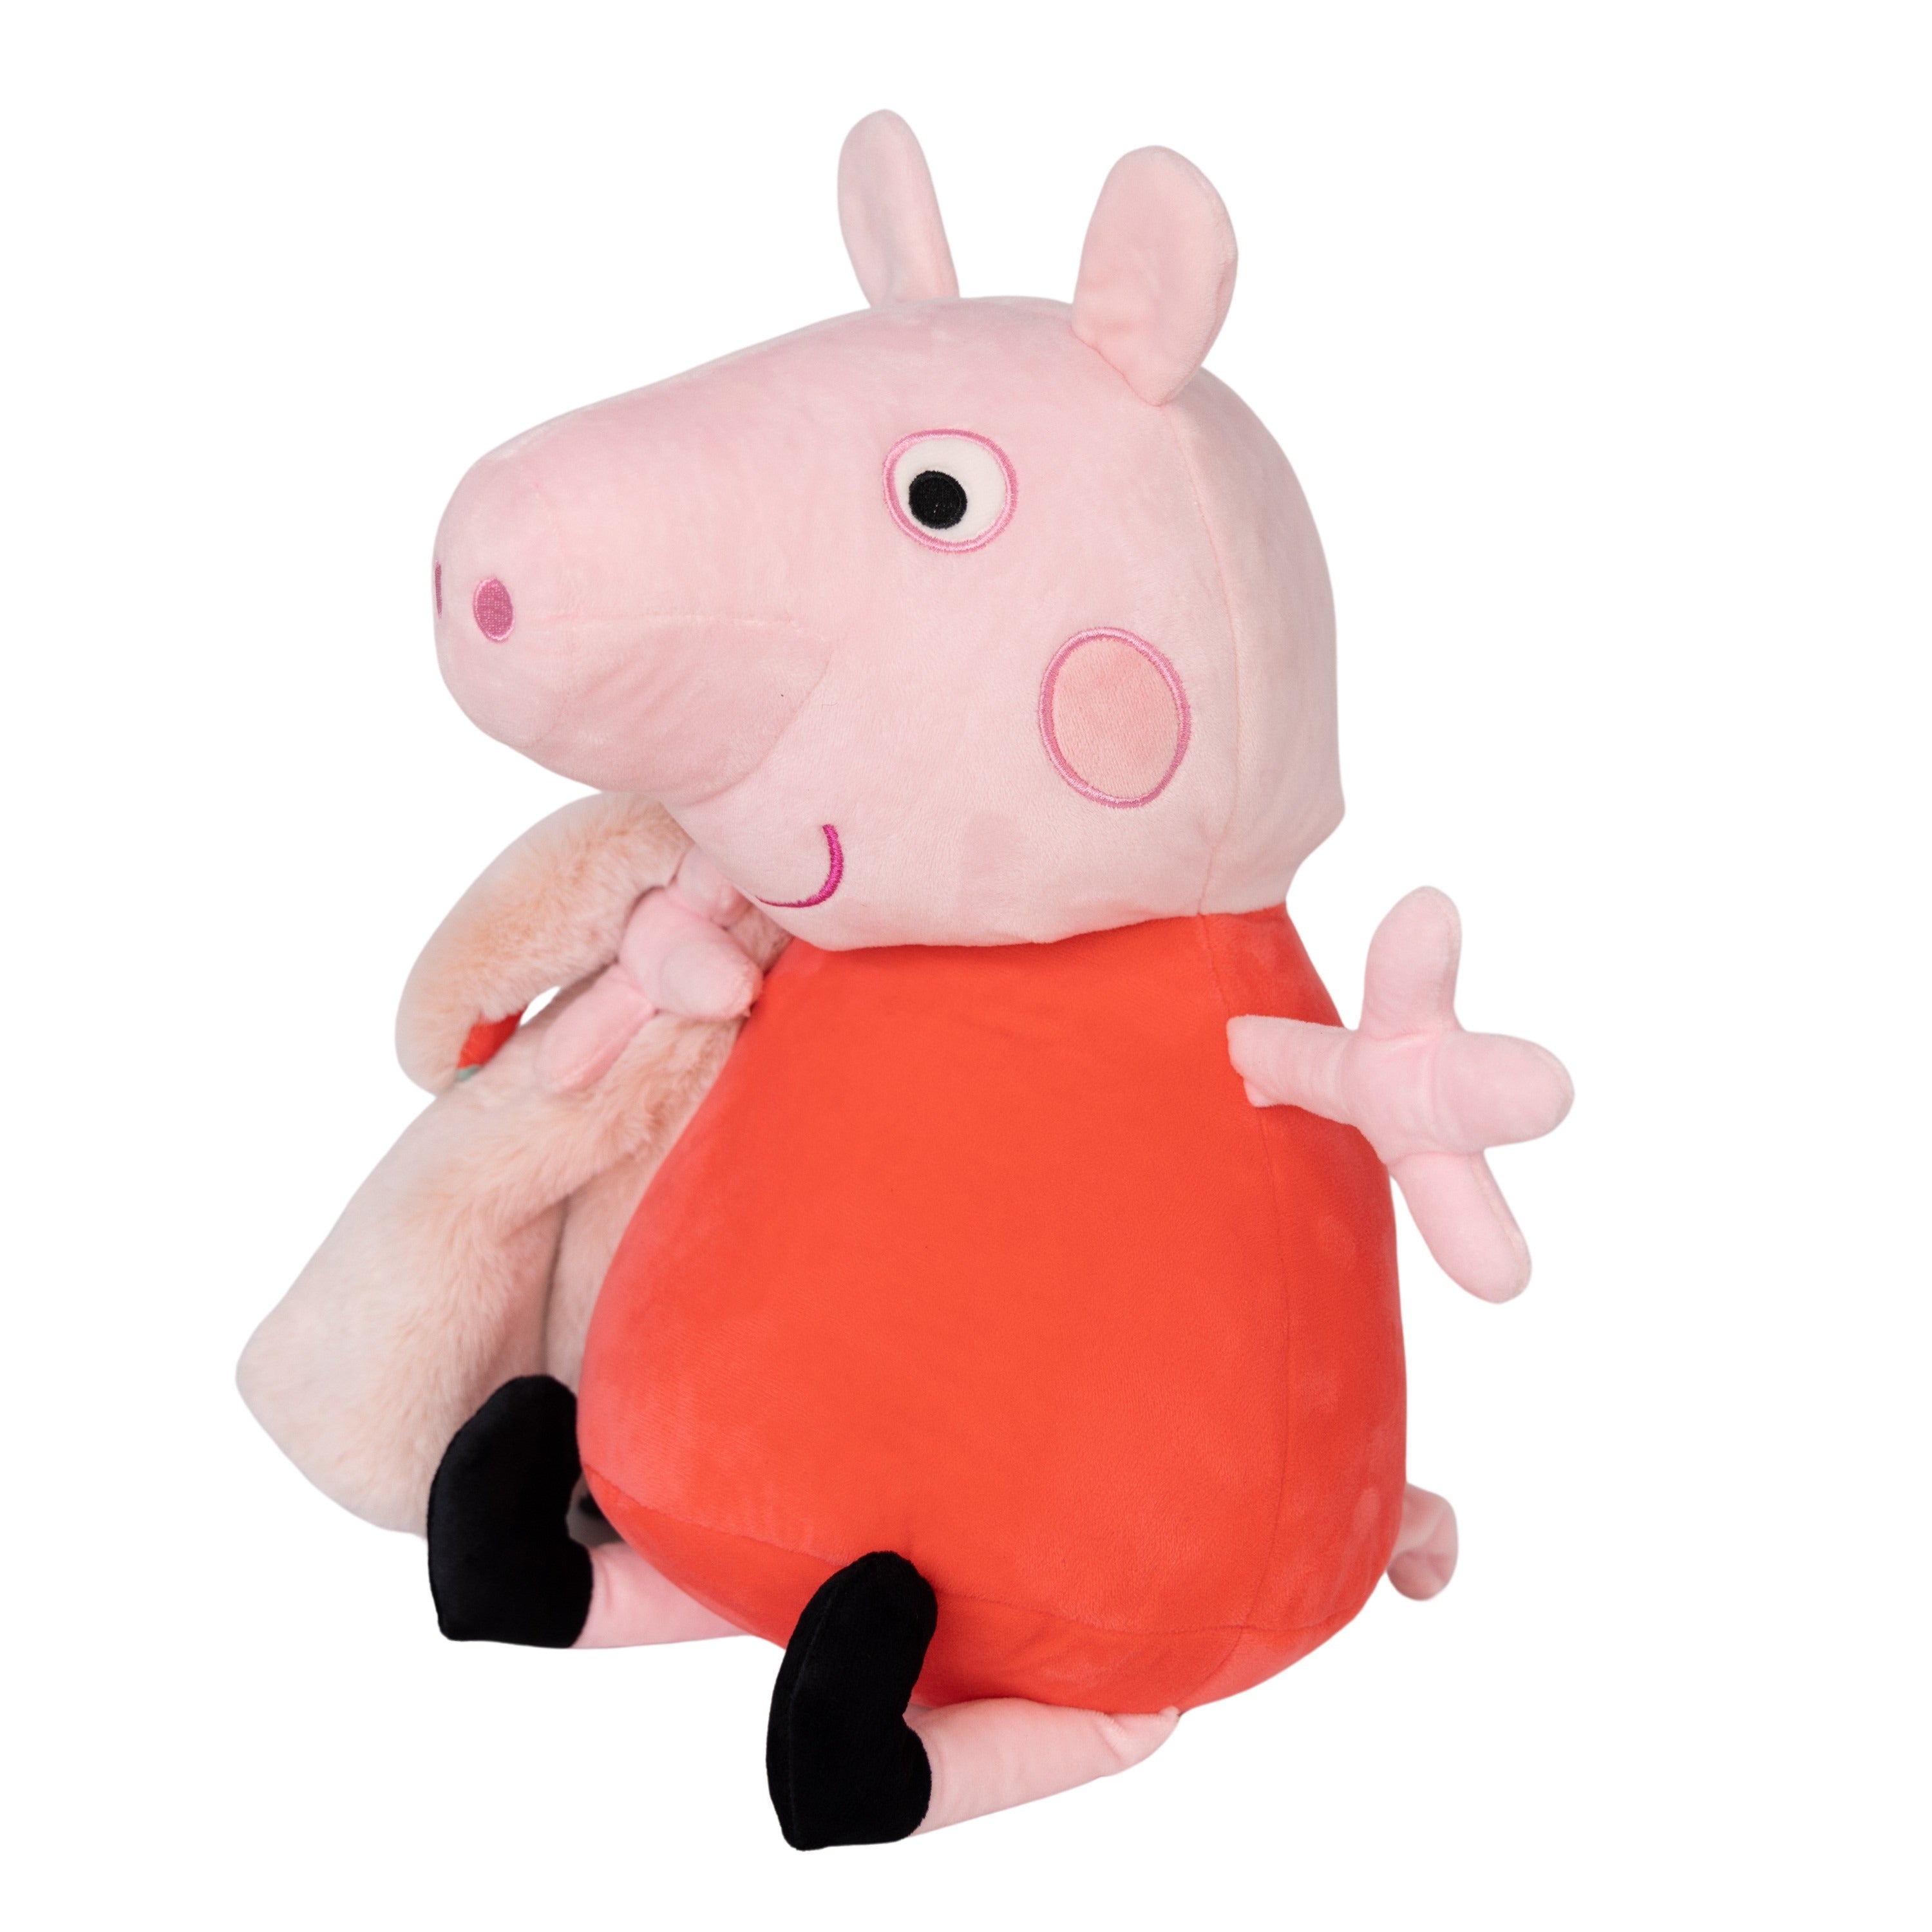 Hasbro | Peppa Pig Blankie Bestie 2-in-1 Blanket & Stuffed Animal